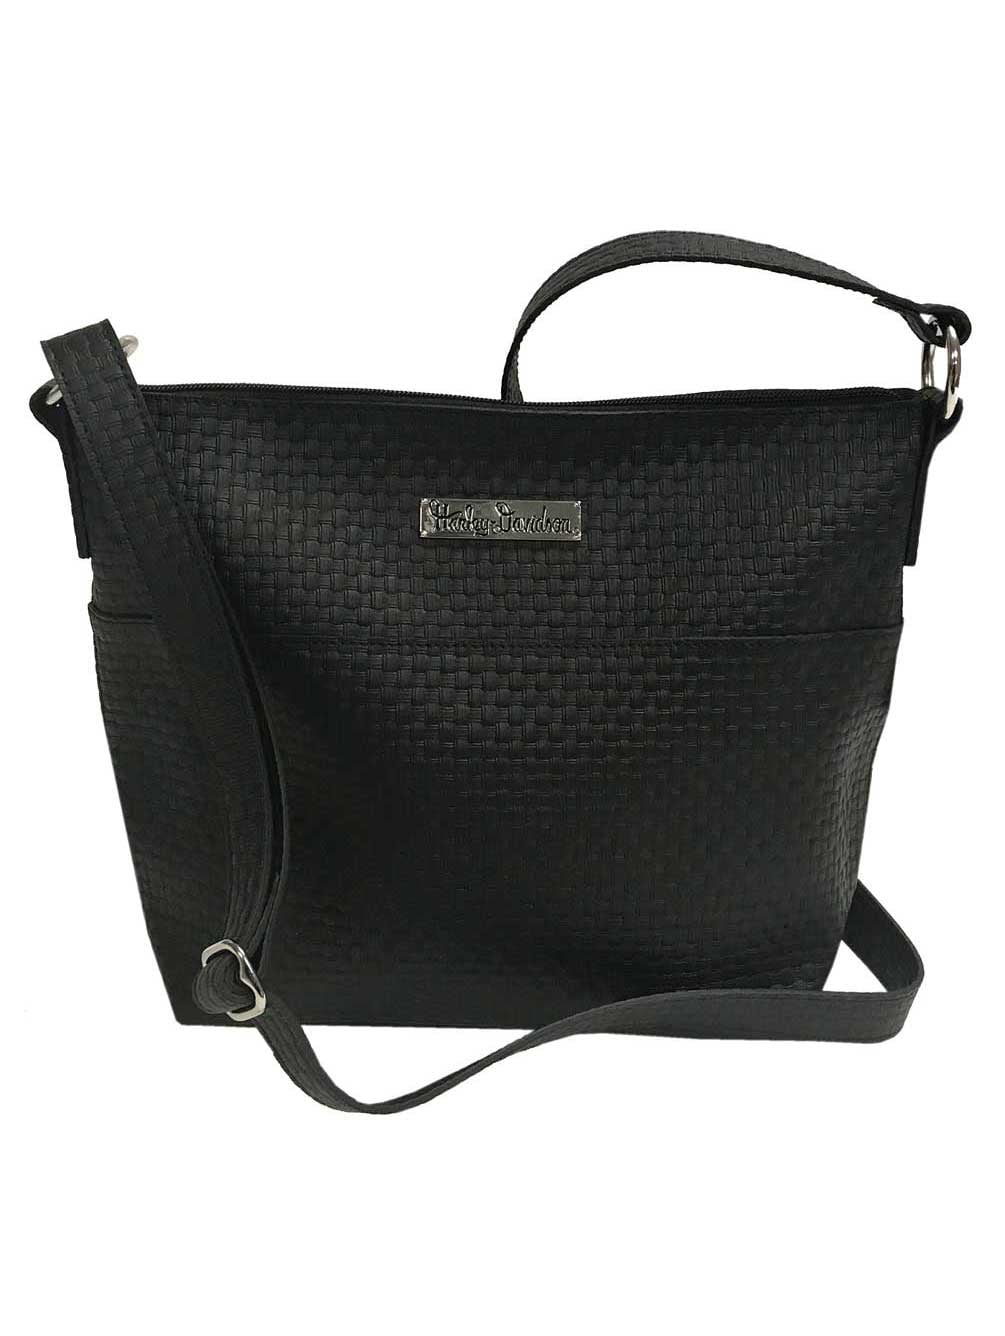 HARLEY DAVIDSON Women's Basket Weave Embossed Hip Bag w/ Strap ZWL9865-BLACK